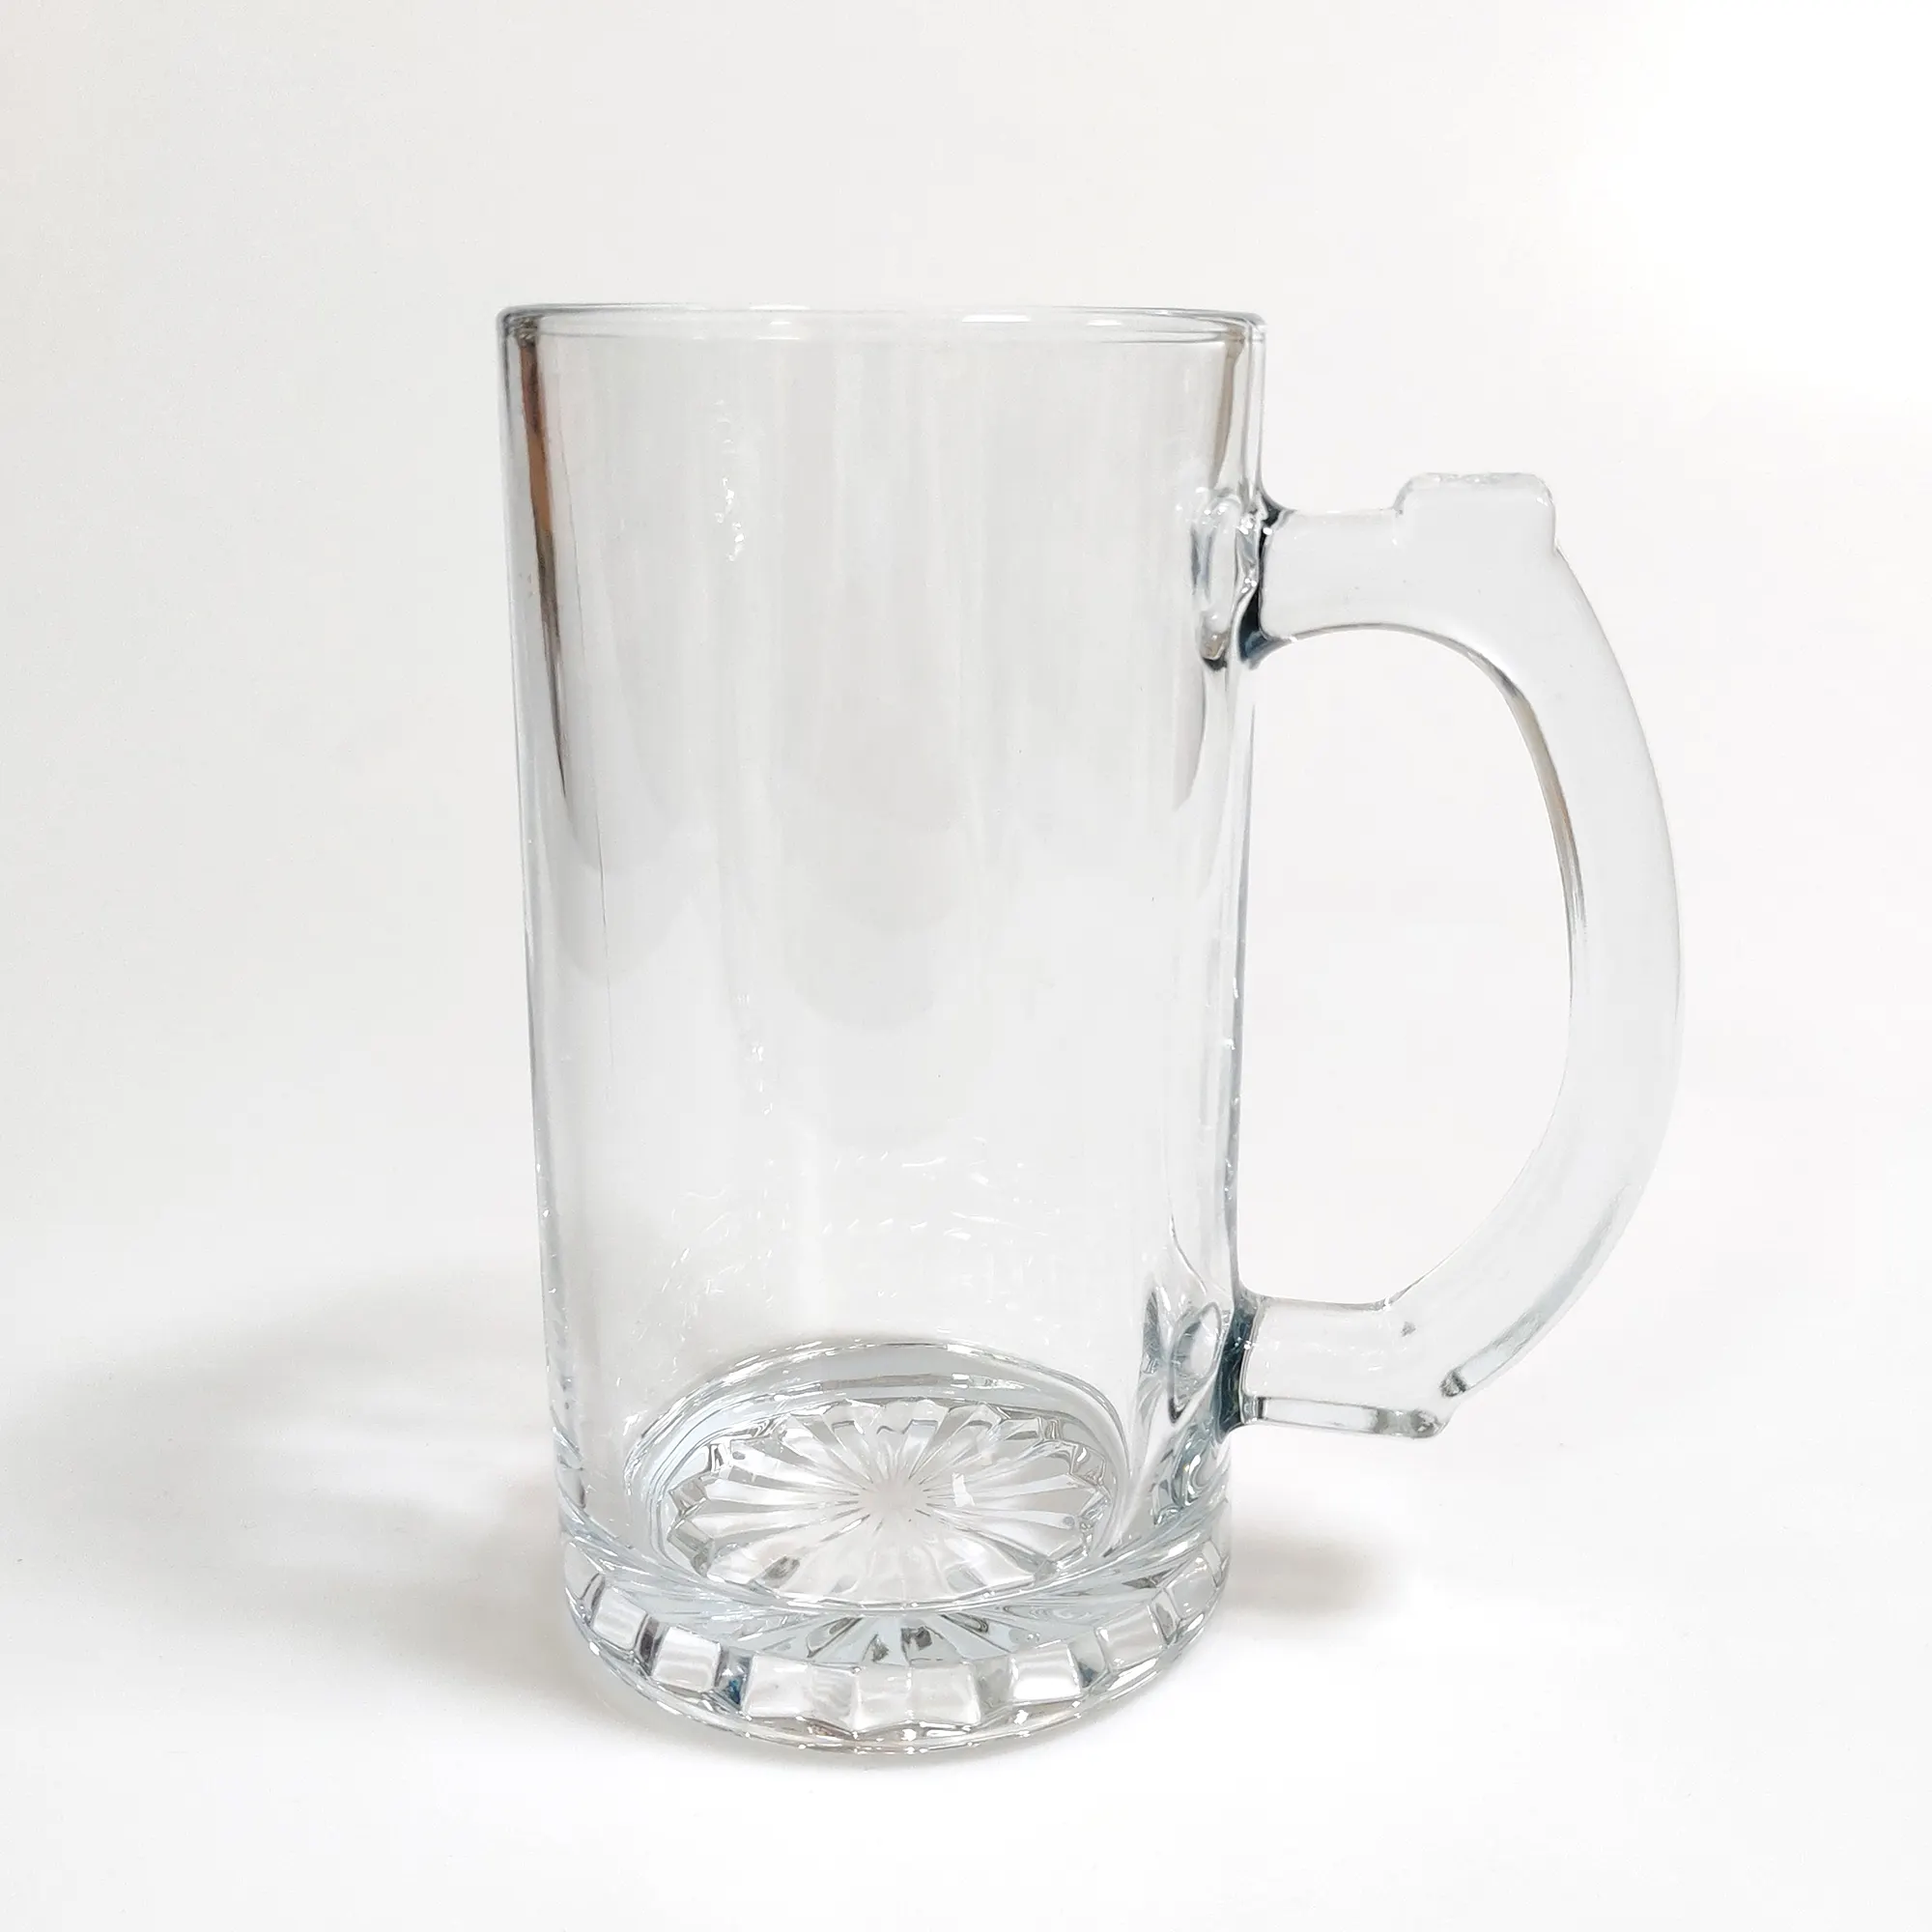 16oz classico cliente stampa logo di vetro boccale di birra con manico bicchiere boccale di birra